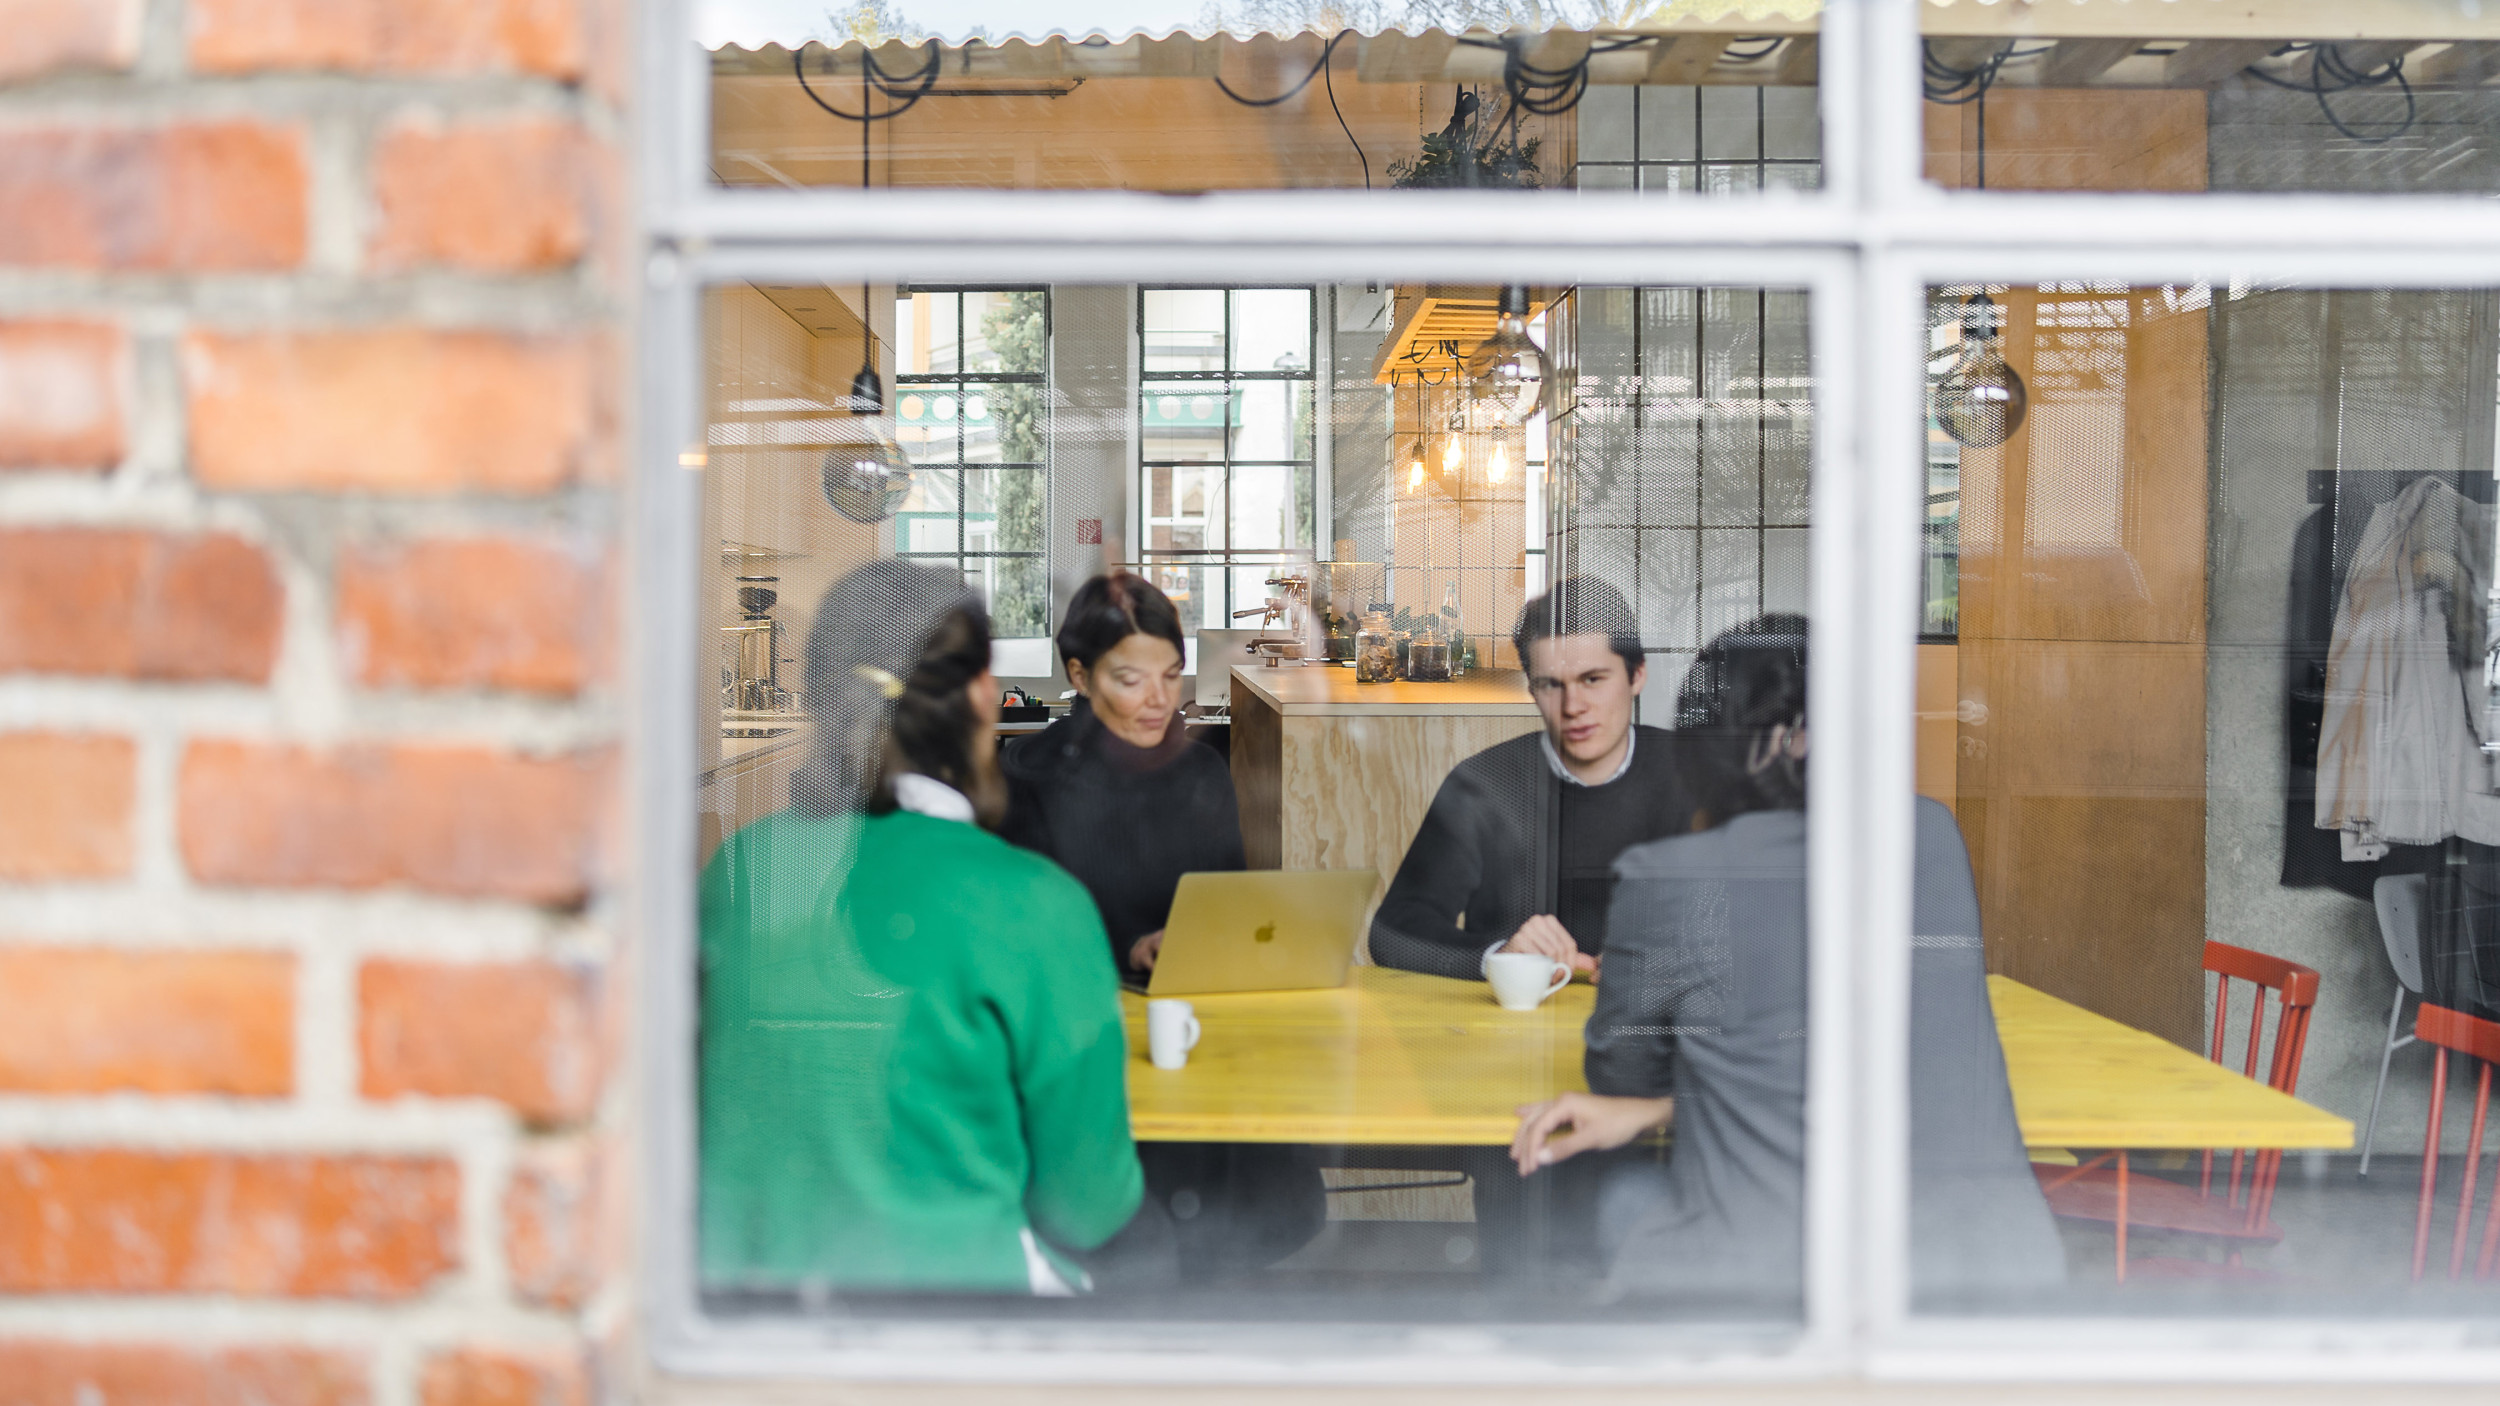 Außenperspektive zeigt vier Mitarbeitende die zusammen an einem gelben Tisch im Pausenraum sitzen.